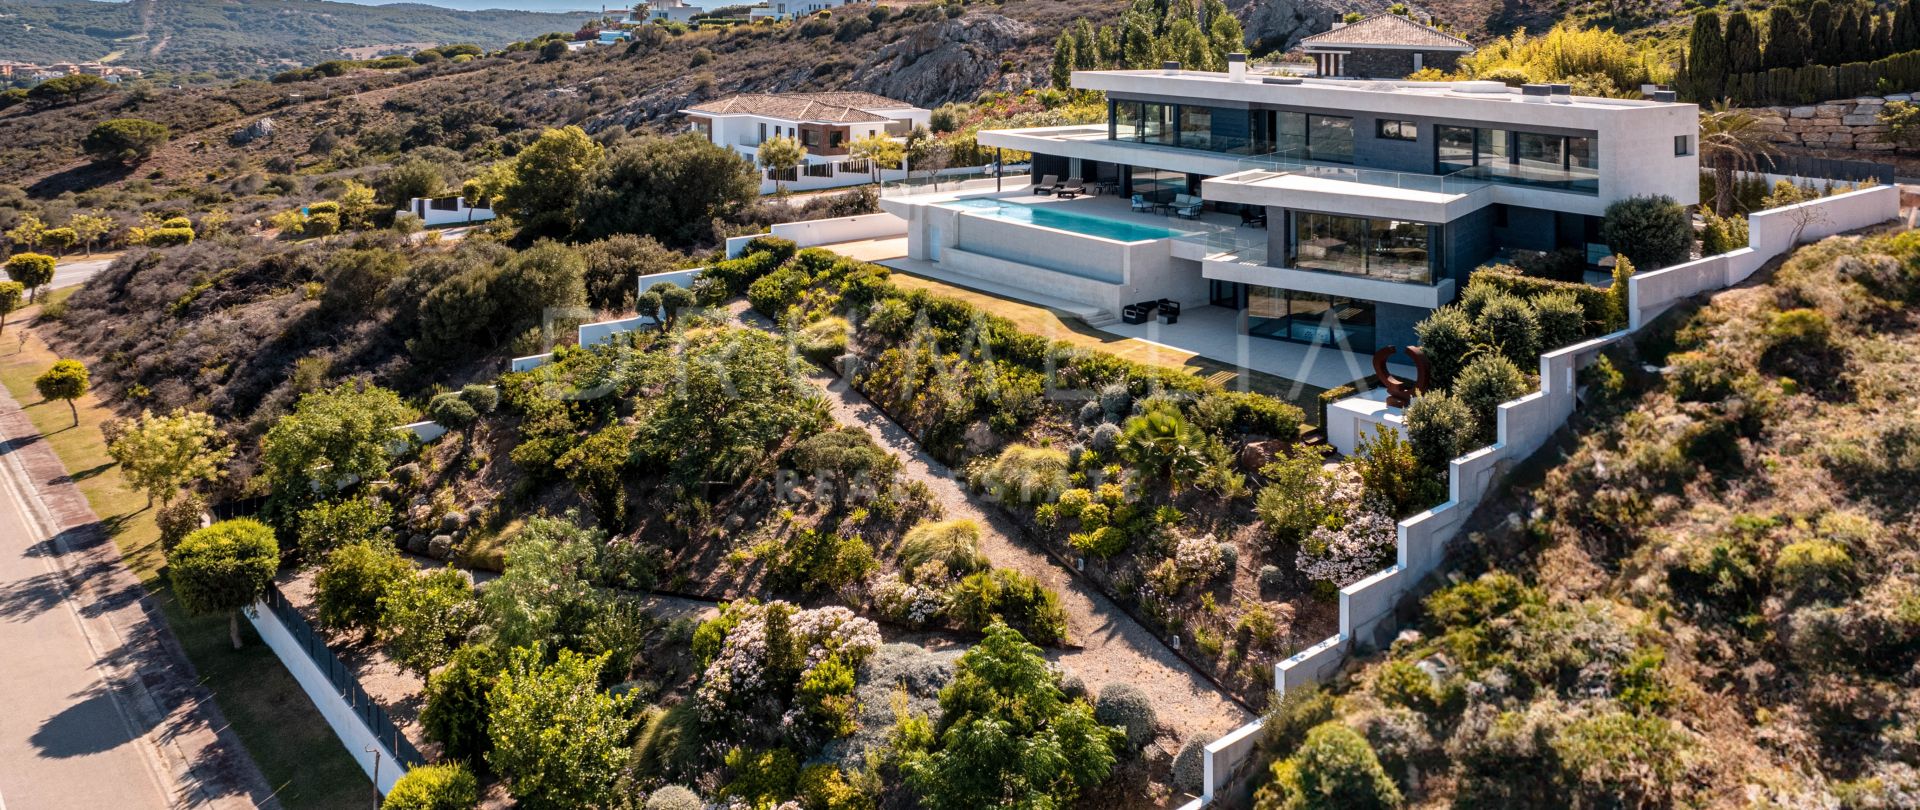 Villa Atlas - Prachtige moderne luxe villa met uitzicht op zee in het prestigieuze La Reserva de Sotogrande.